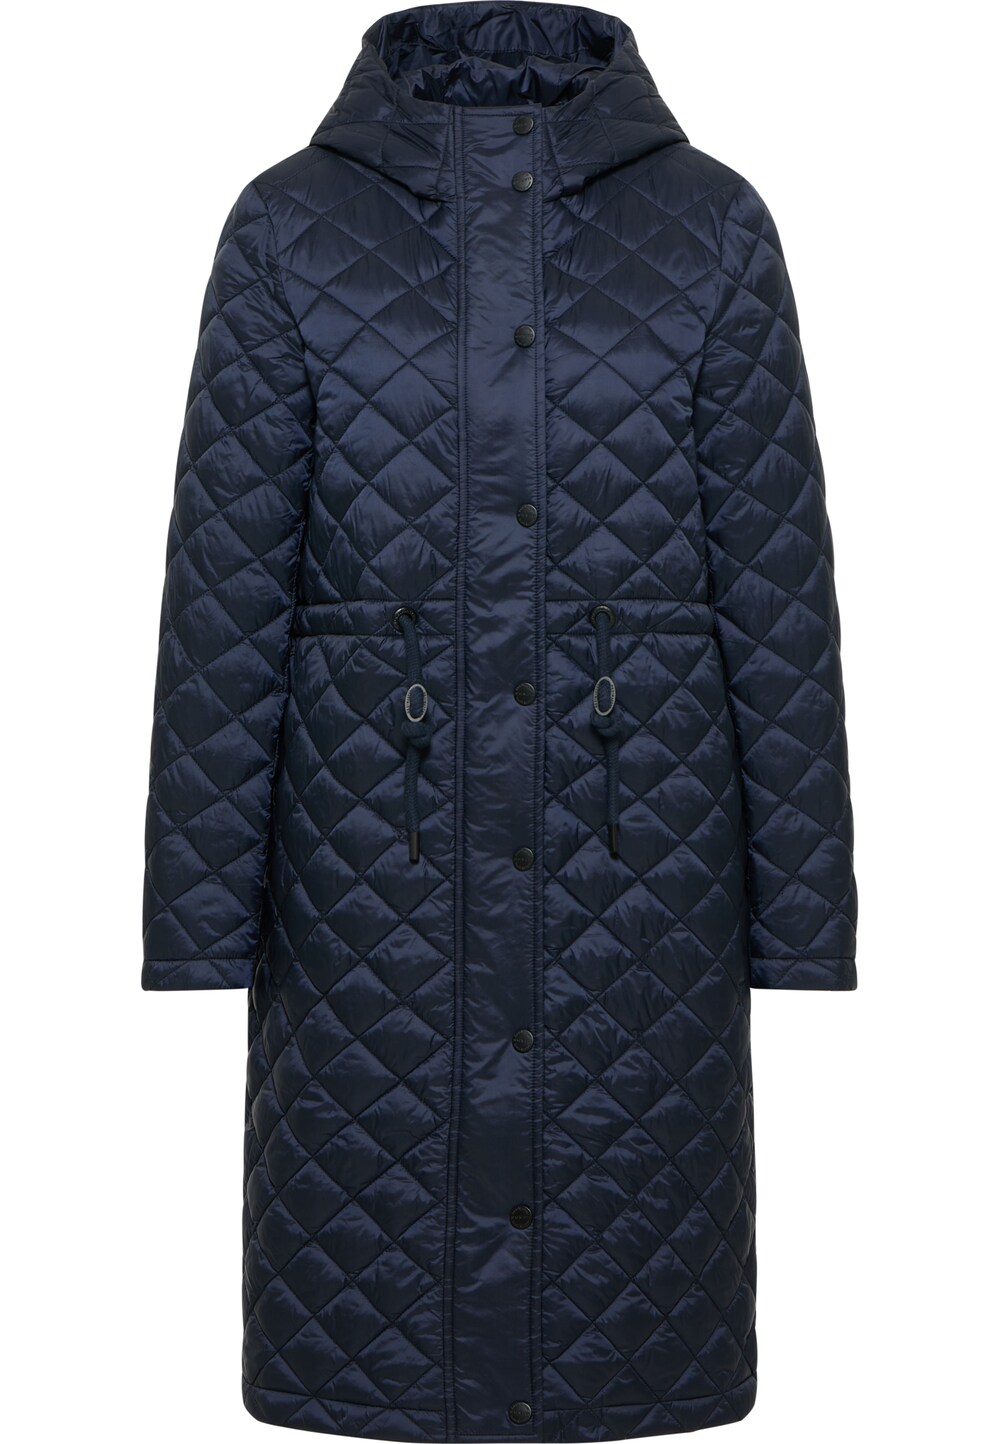 Межсезонное пальто DreiMaster, ночной синий межсезонное пальто dreimaster коричневый